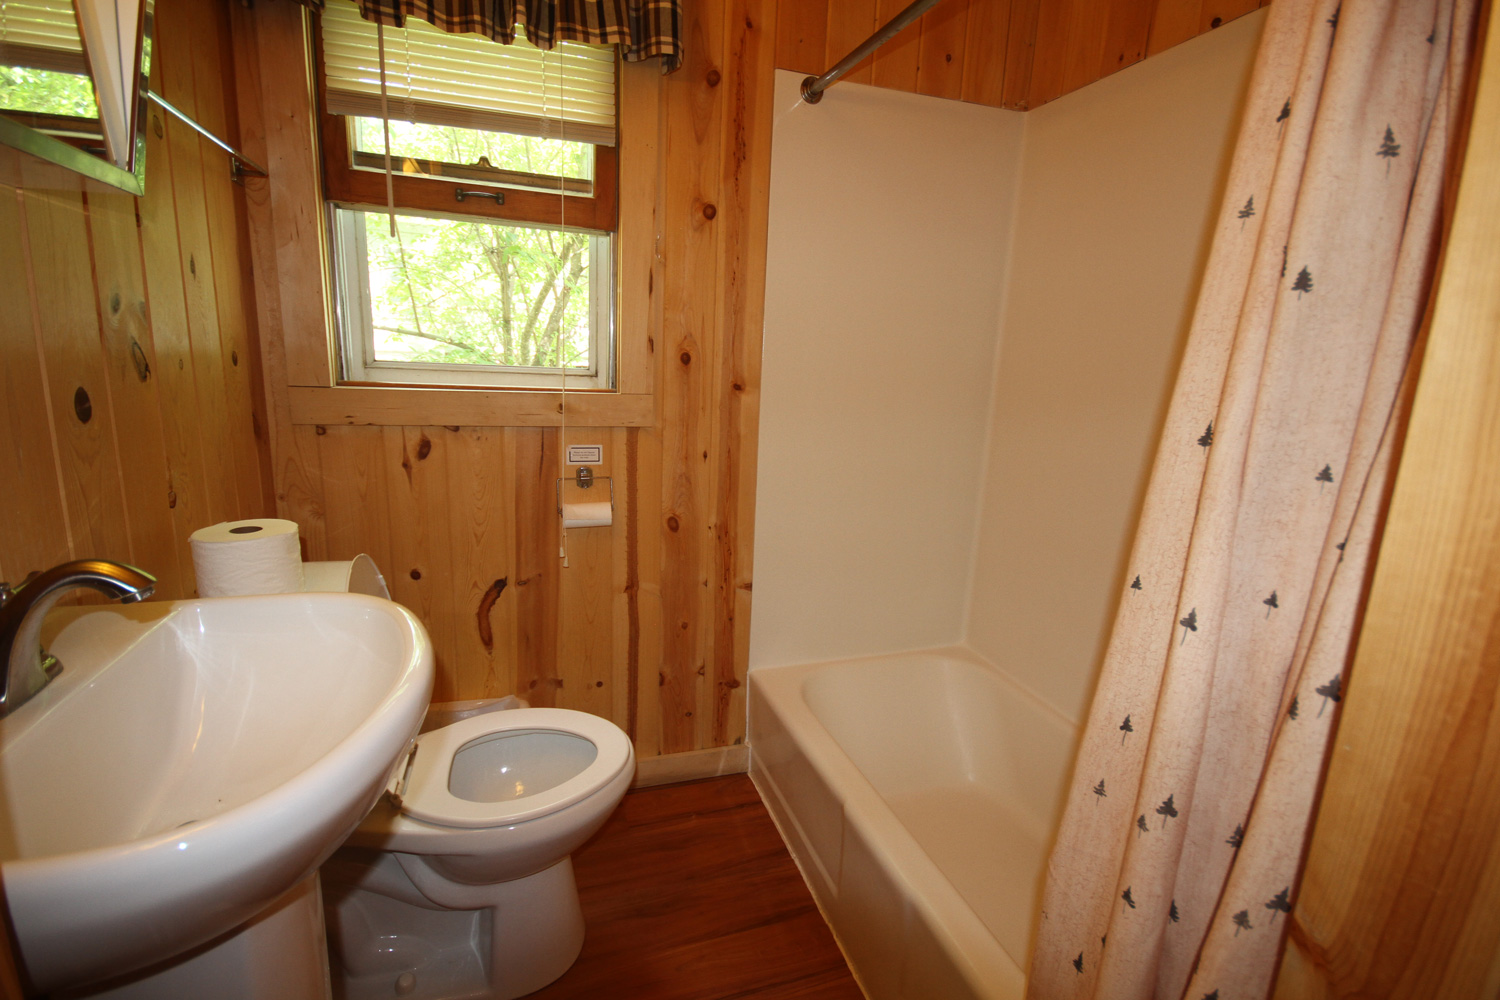 Full bathroom with tub / shower